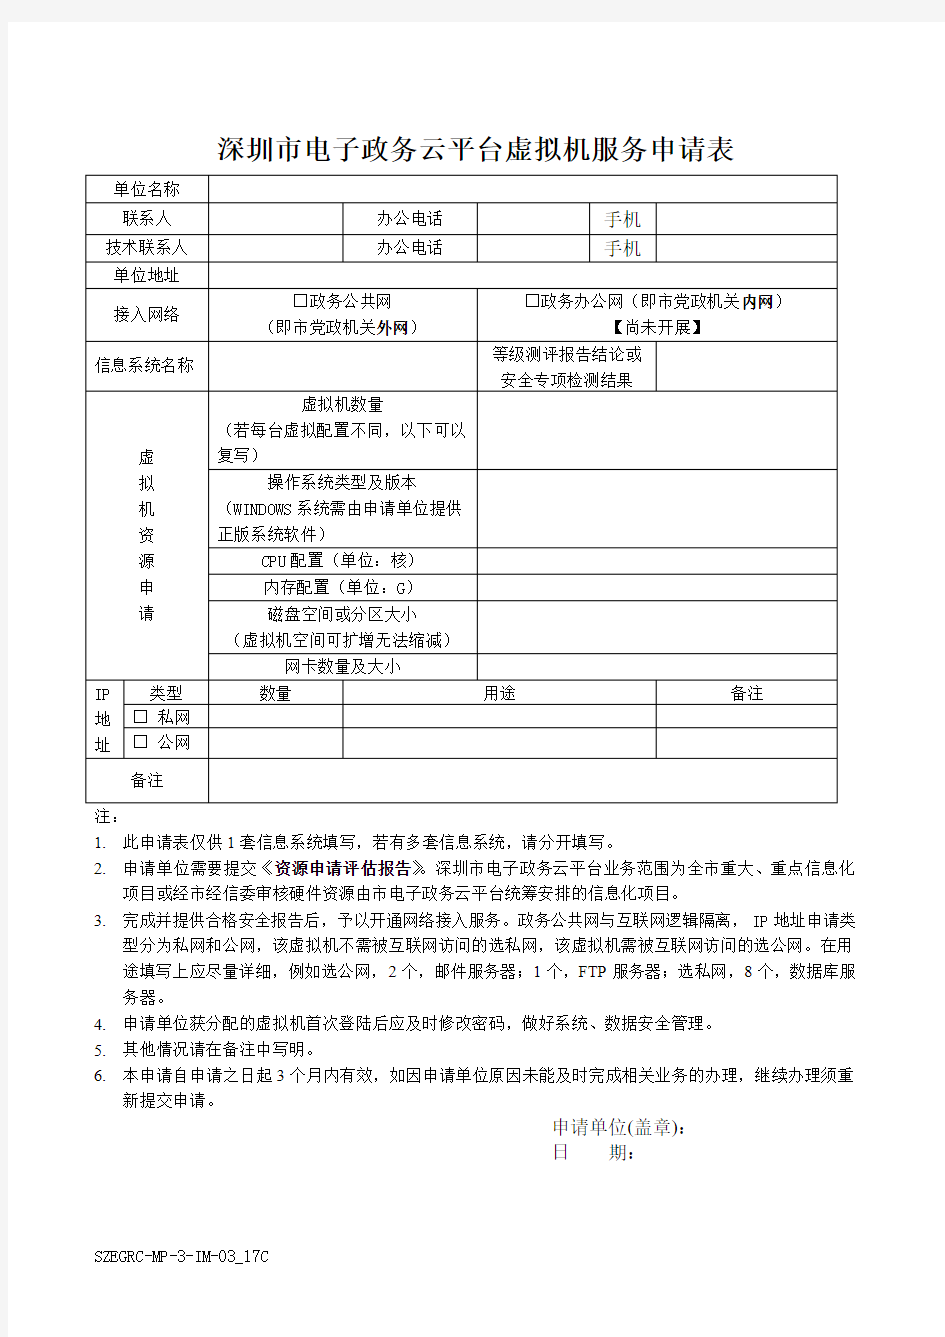 深圳电子政务云平台虚拟机服务申请表